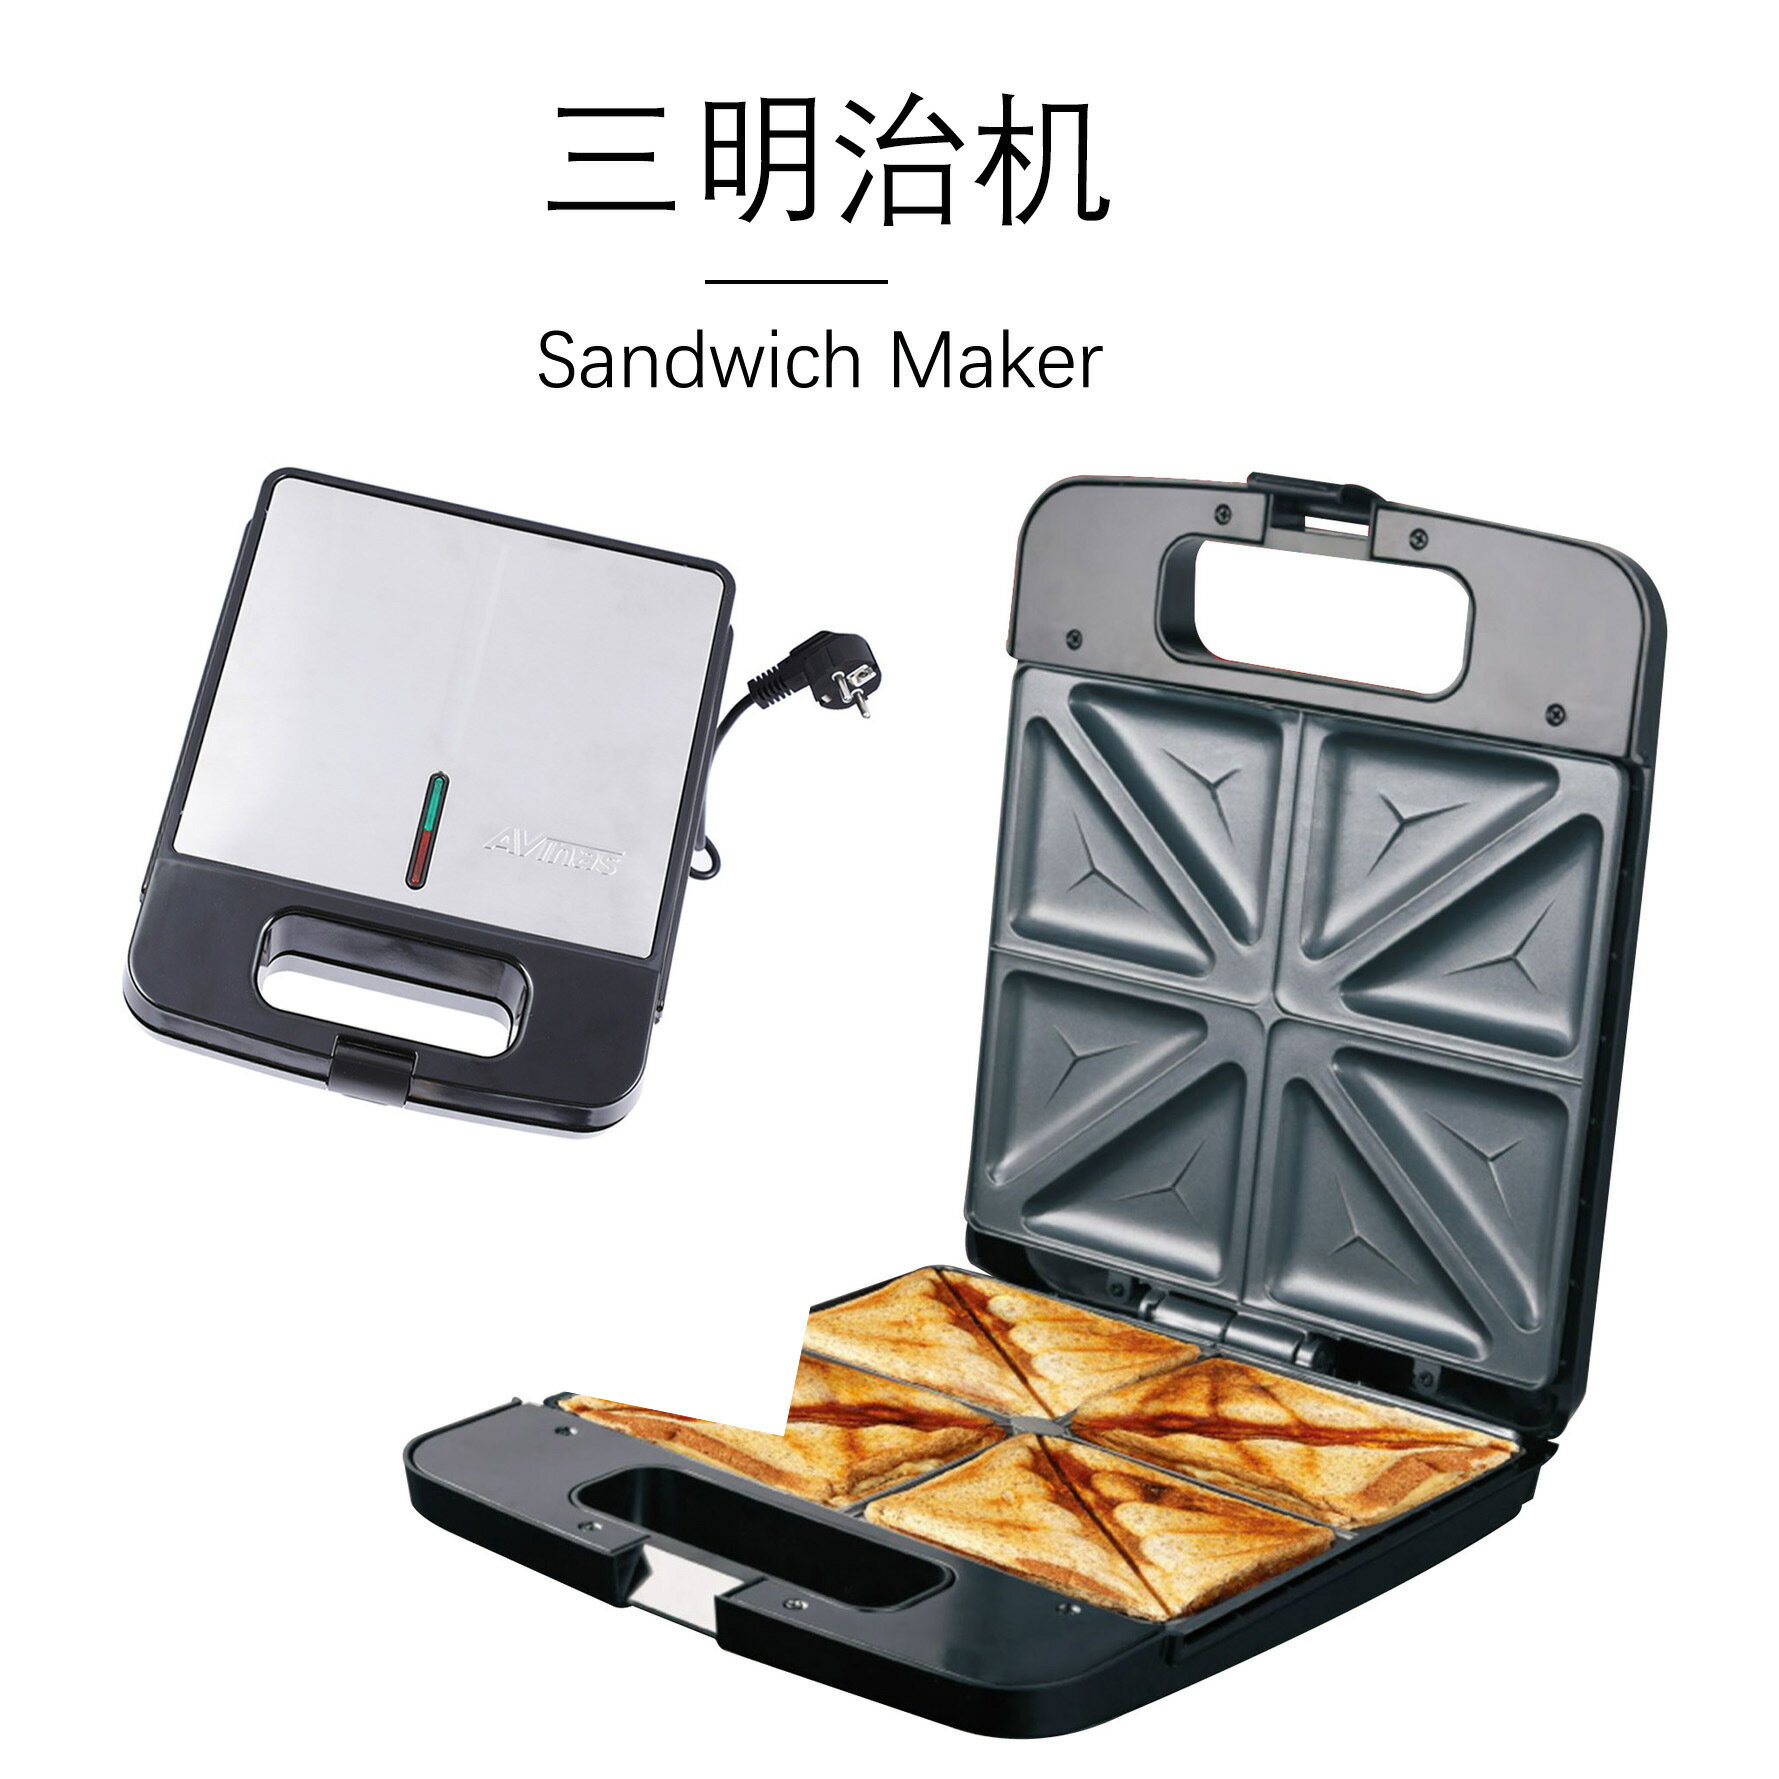 早餐機 110v電熱華夫餅機 家用三明治機 早餐華夫餅機 sandwich maker 雙十一熱購 交換禮物全館免運